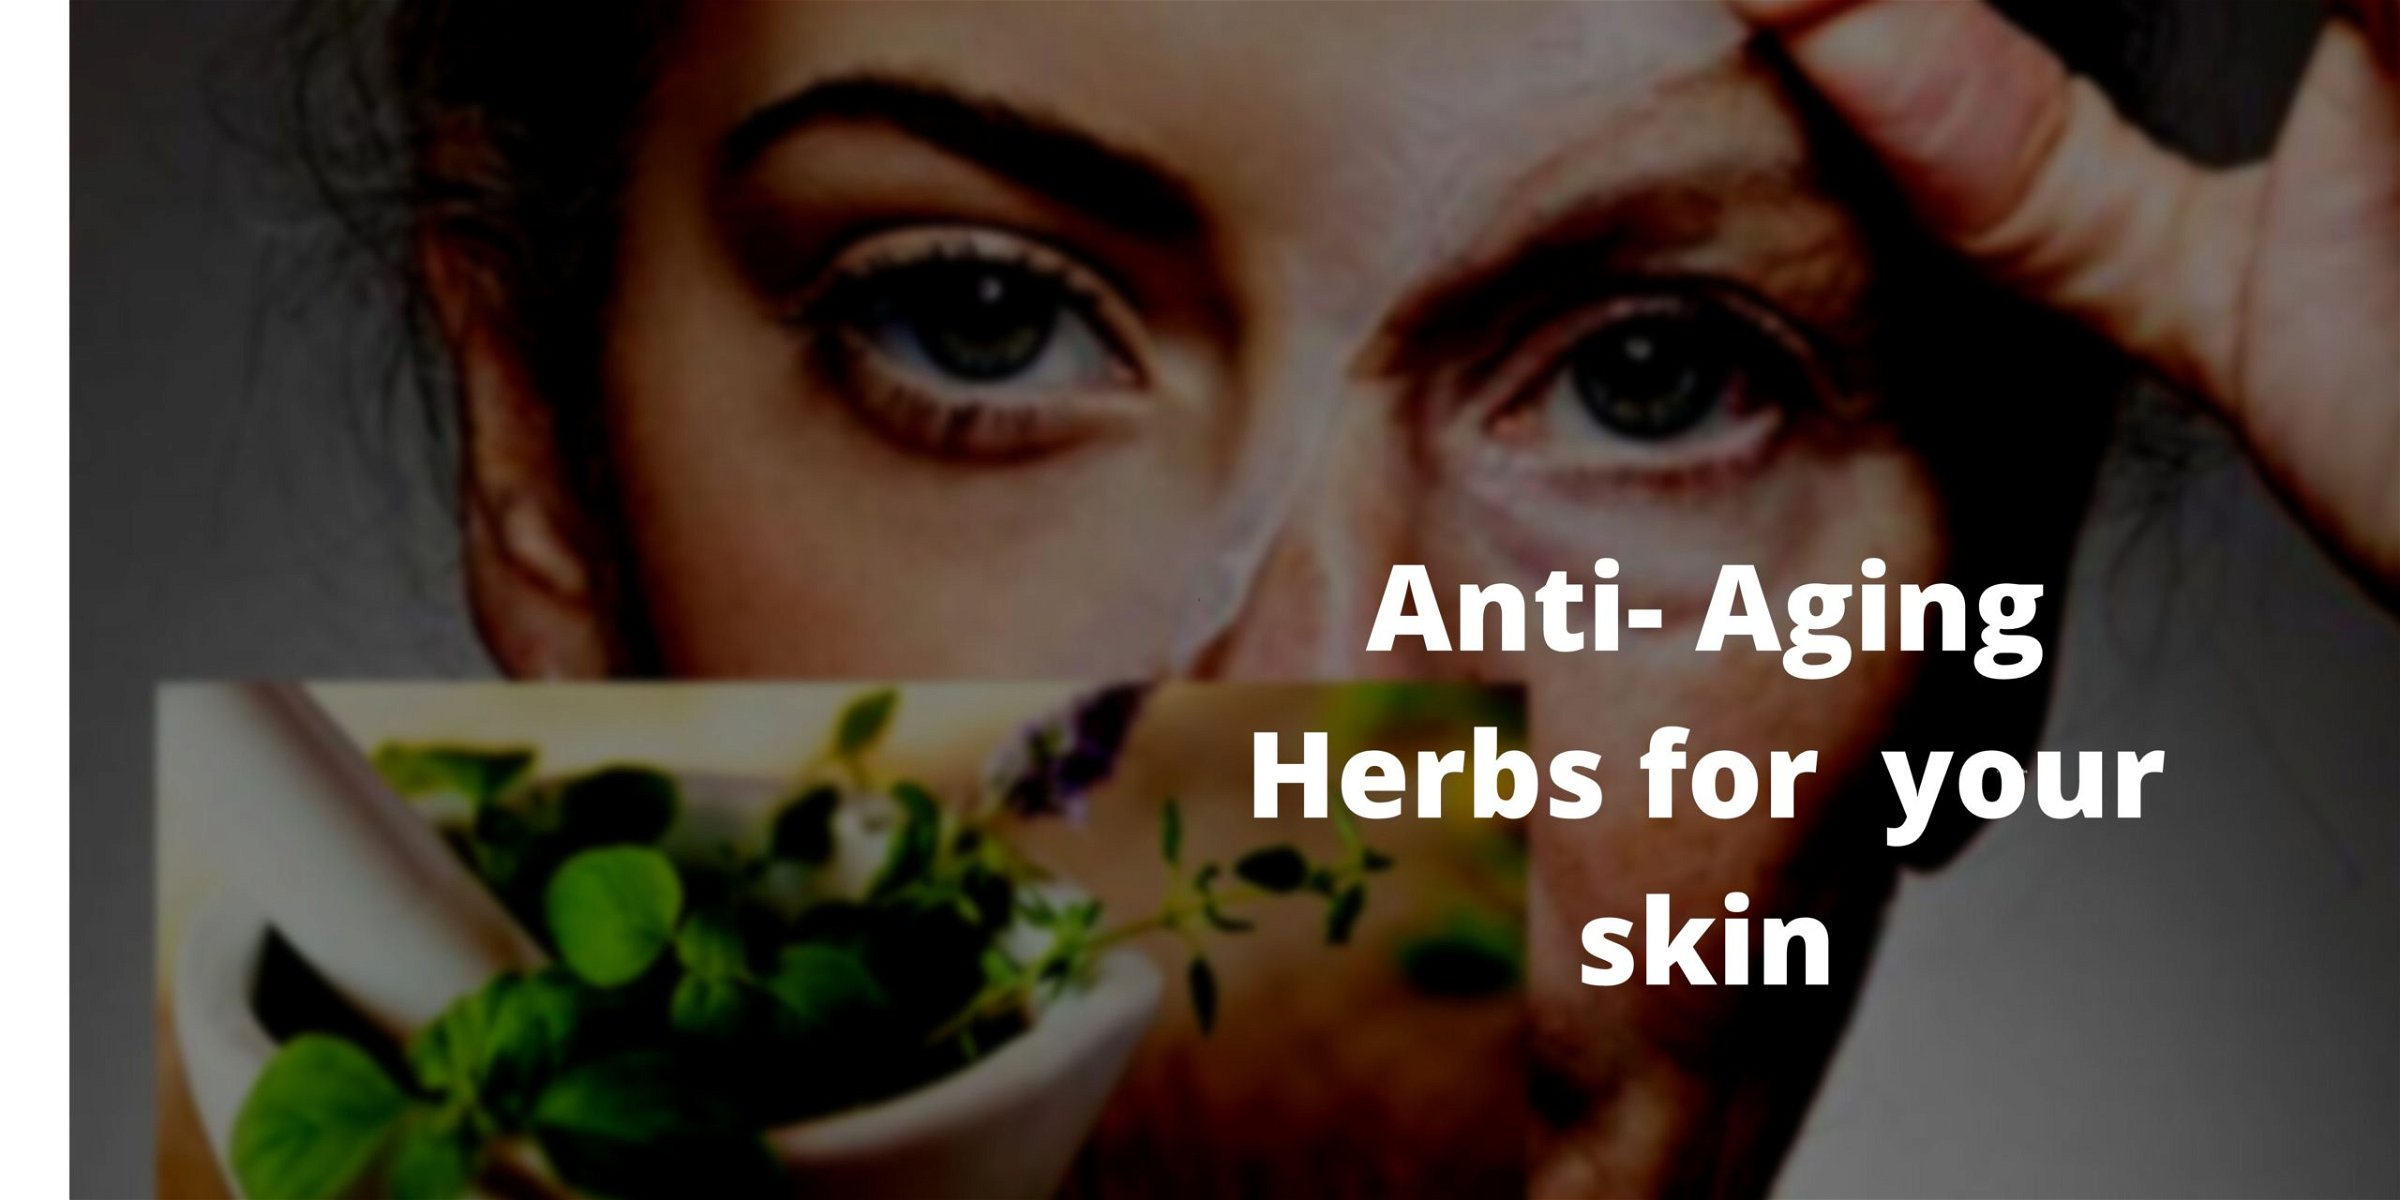 Anti-aging herbs